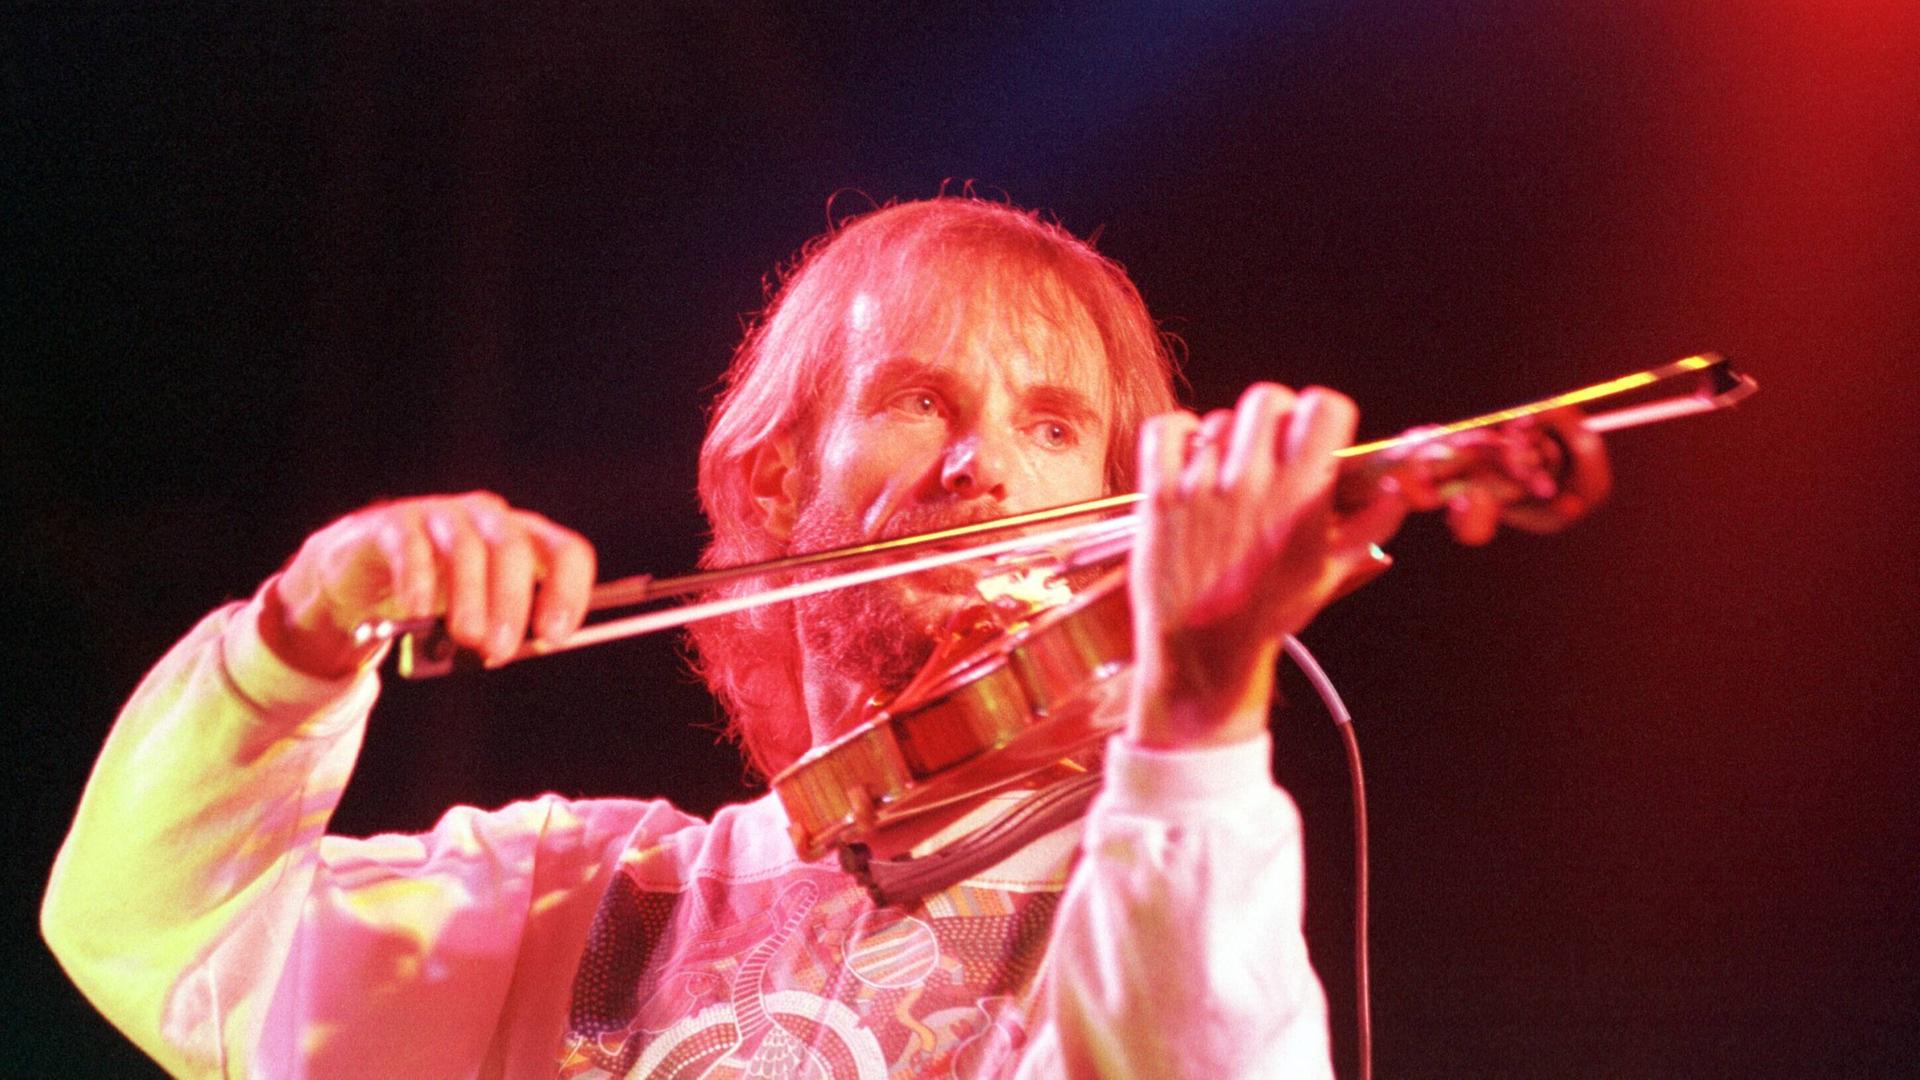 Ein bärtiger Mann spielt, angestrahlt von Bühnenlicht, Geige. 